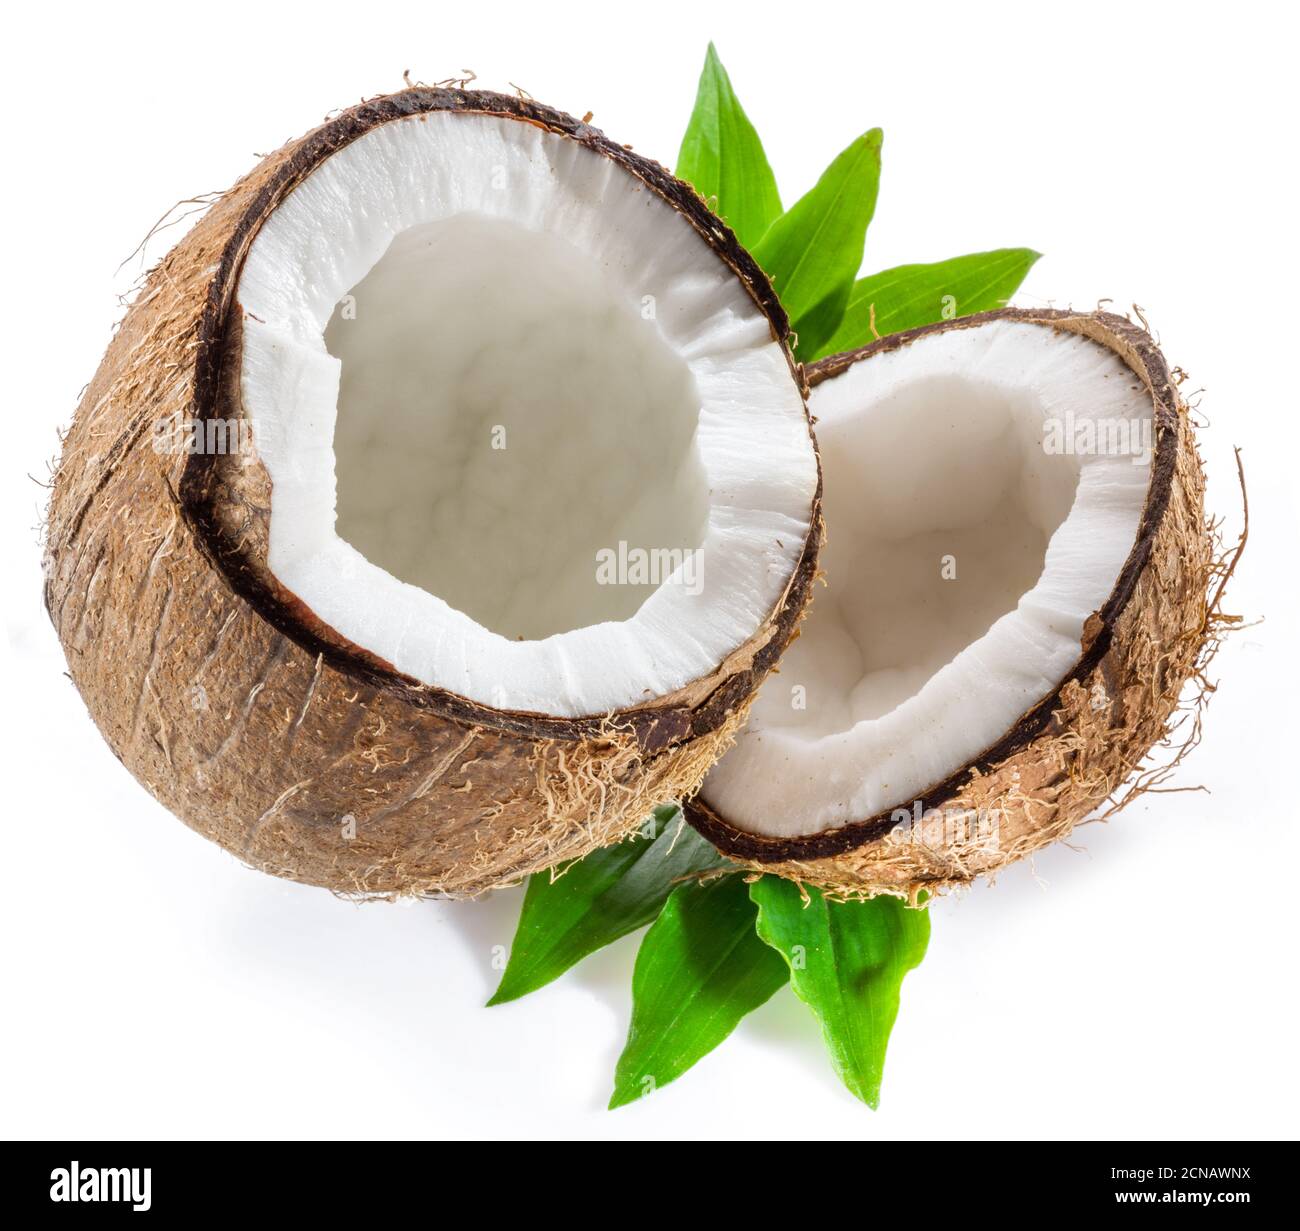 Cracked coconut fruit with white flesh isolated on white background. Stock Photo